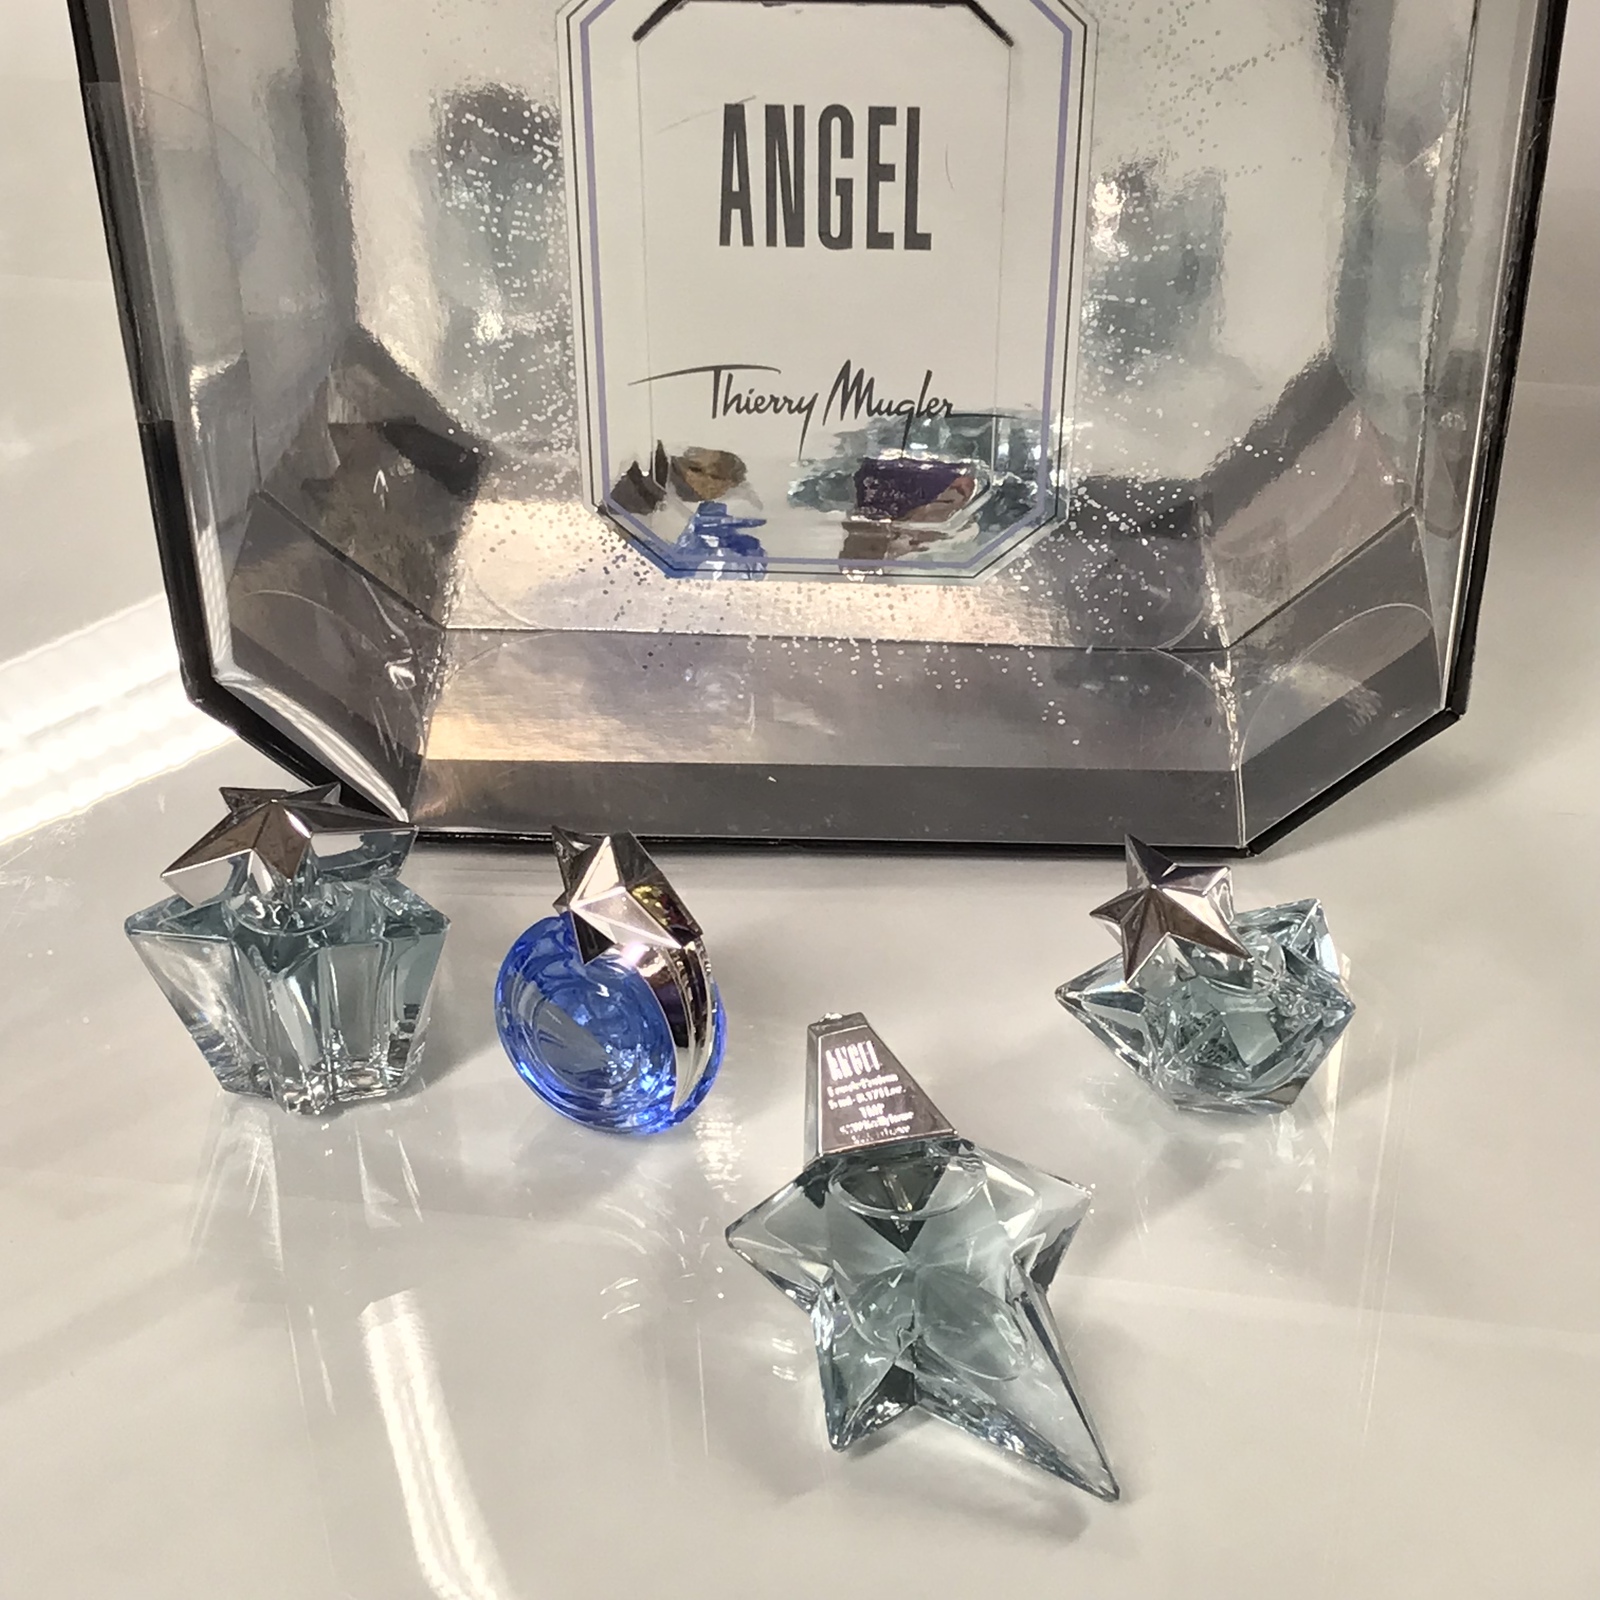 Mugler Angel Eau de Parfum Travel Spray 0.3oz/ 10 ml